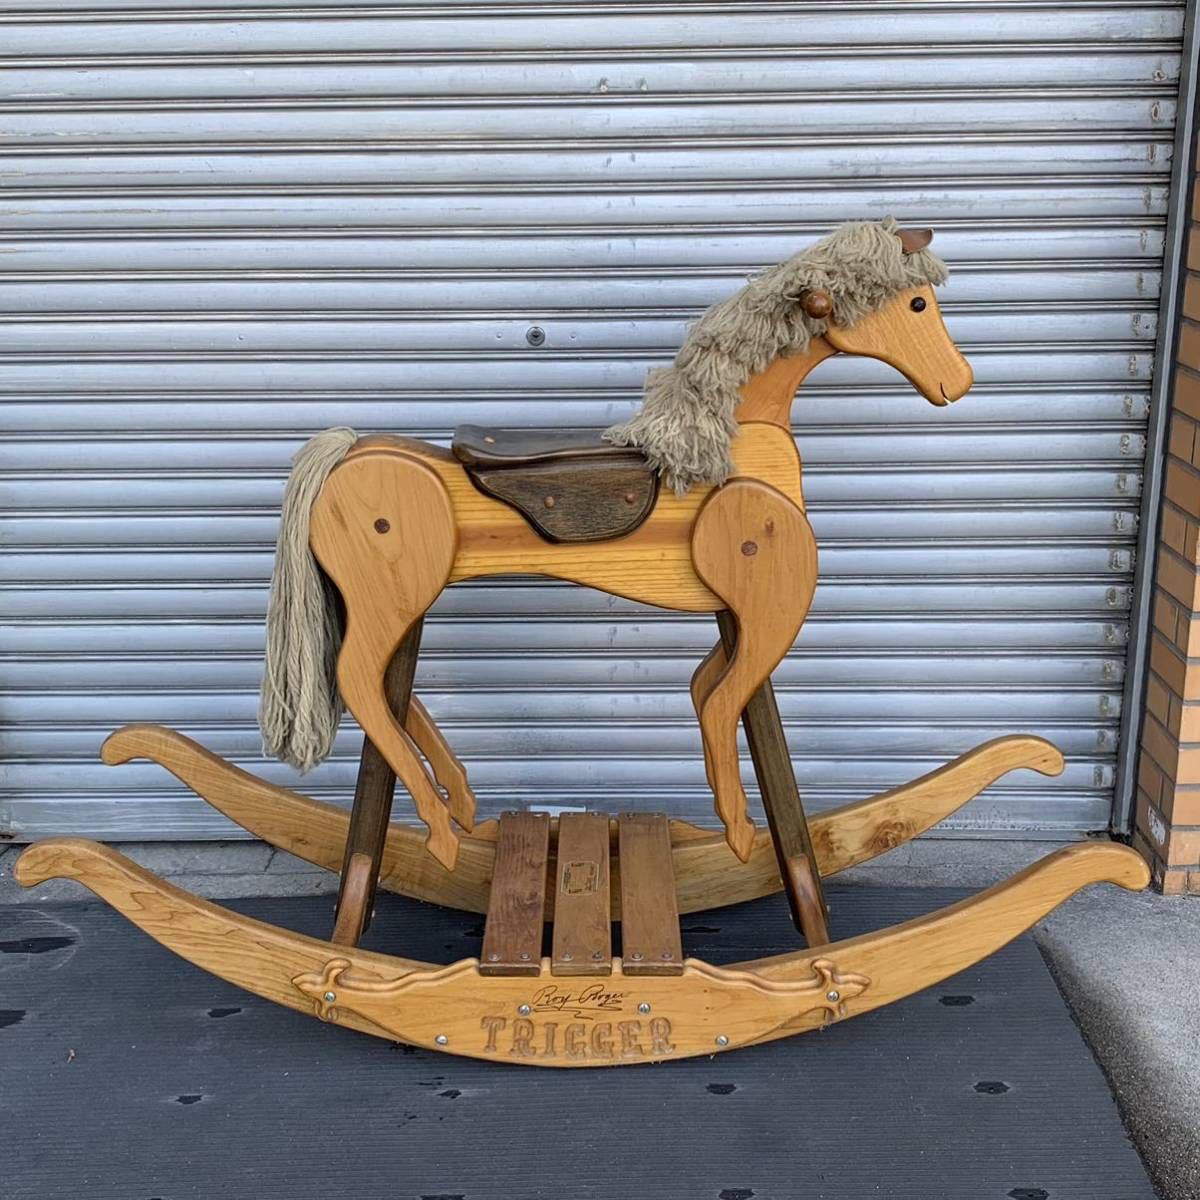 Roy Roger Vintage деревянная лошадь locking шланг TRIGGER 1988 Golden Anniversary примерно 106×145×46.(C06O)